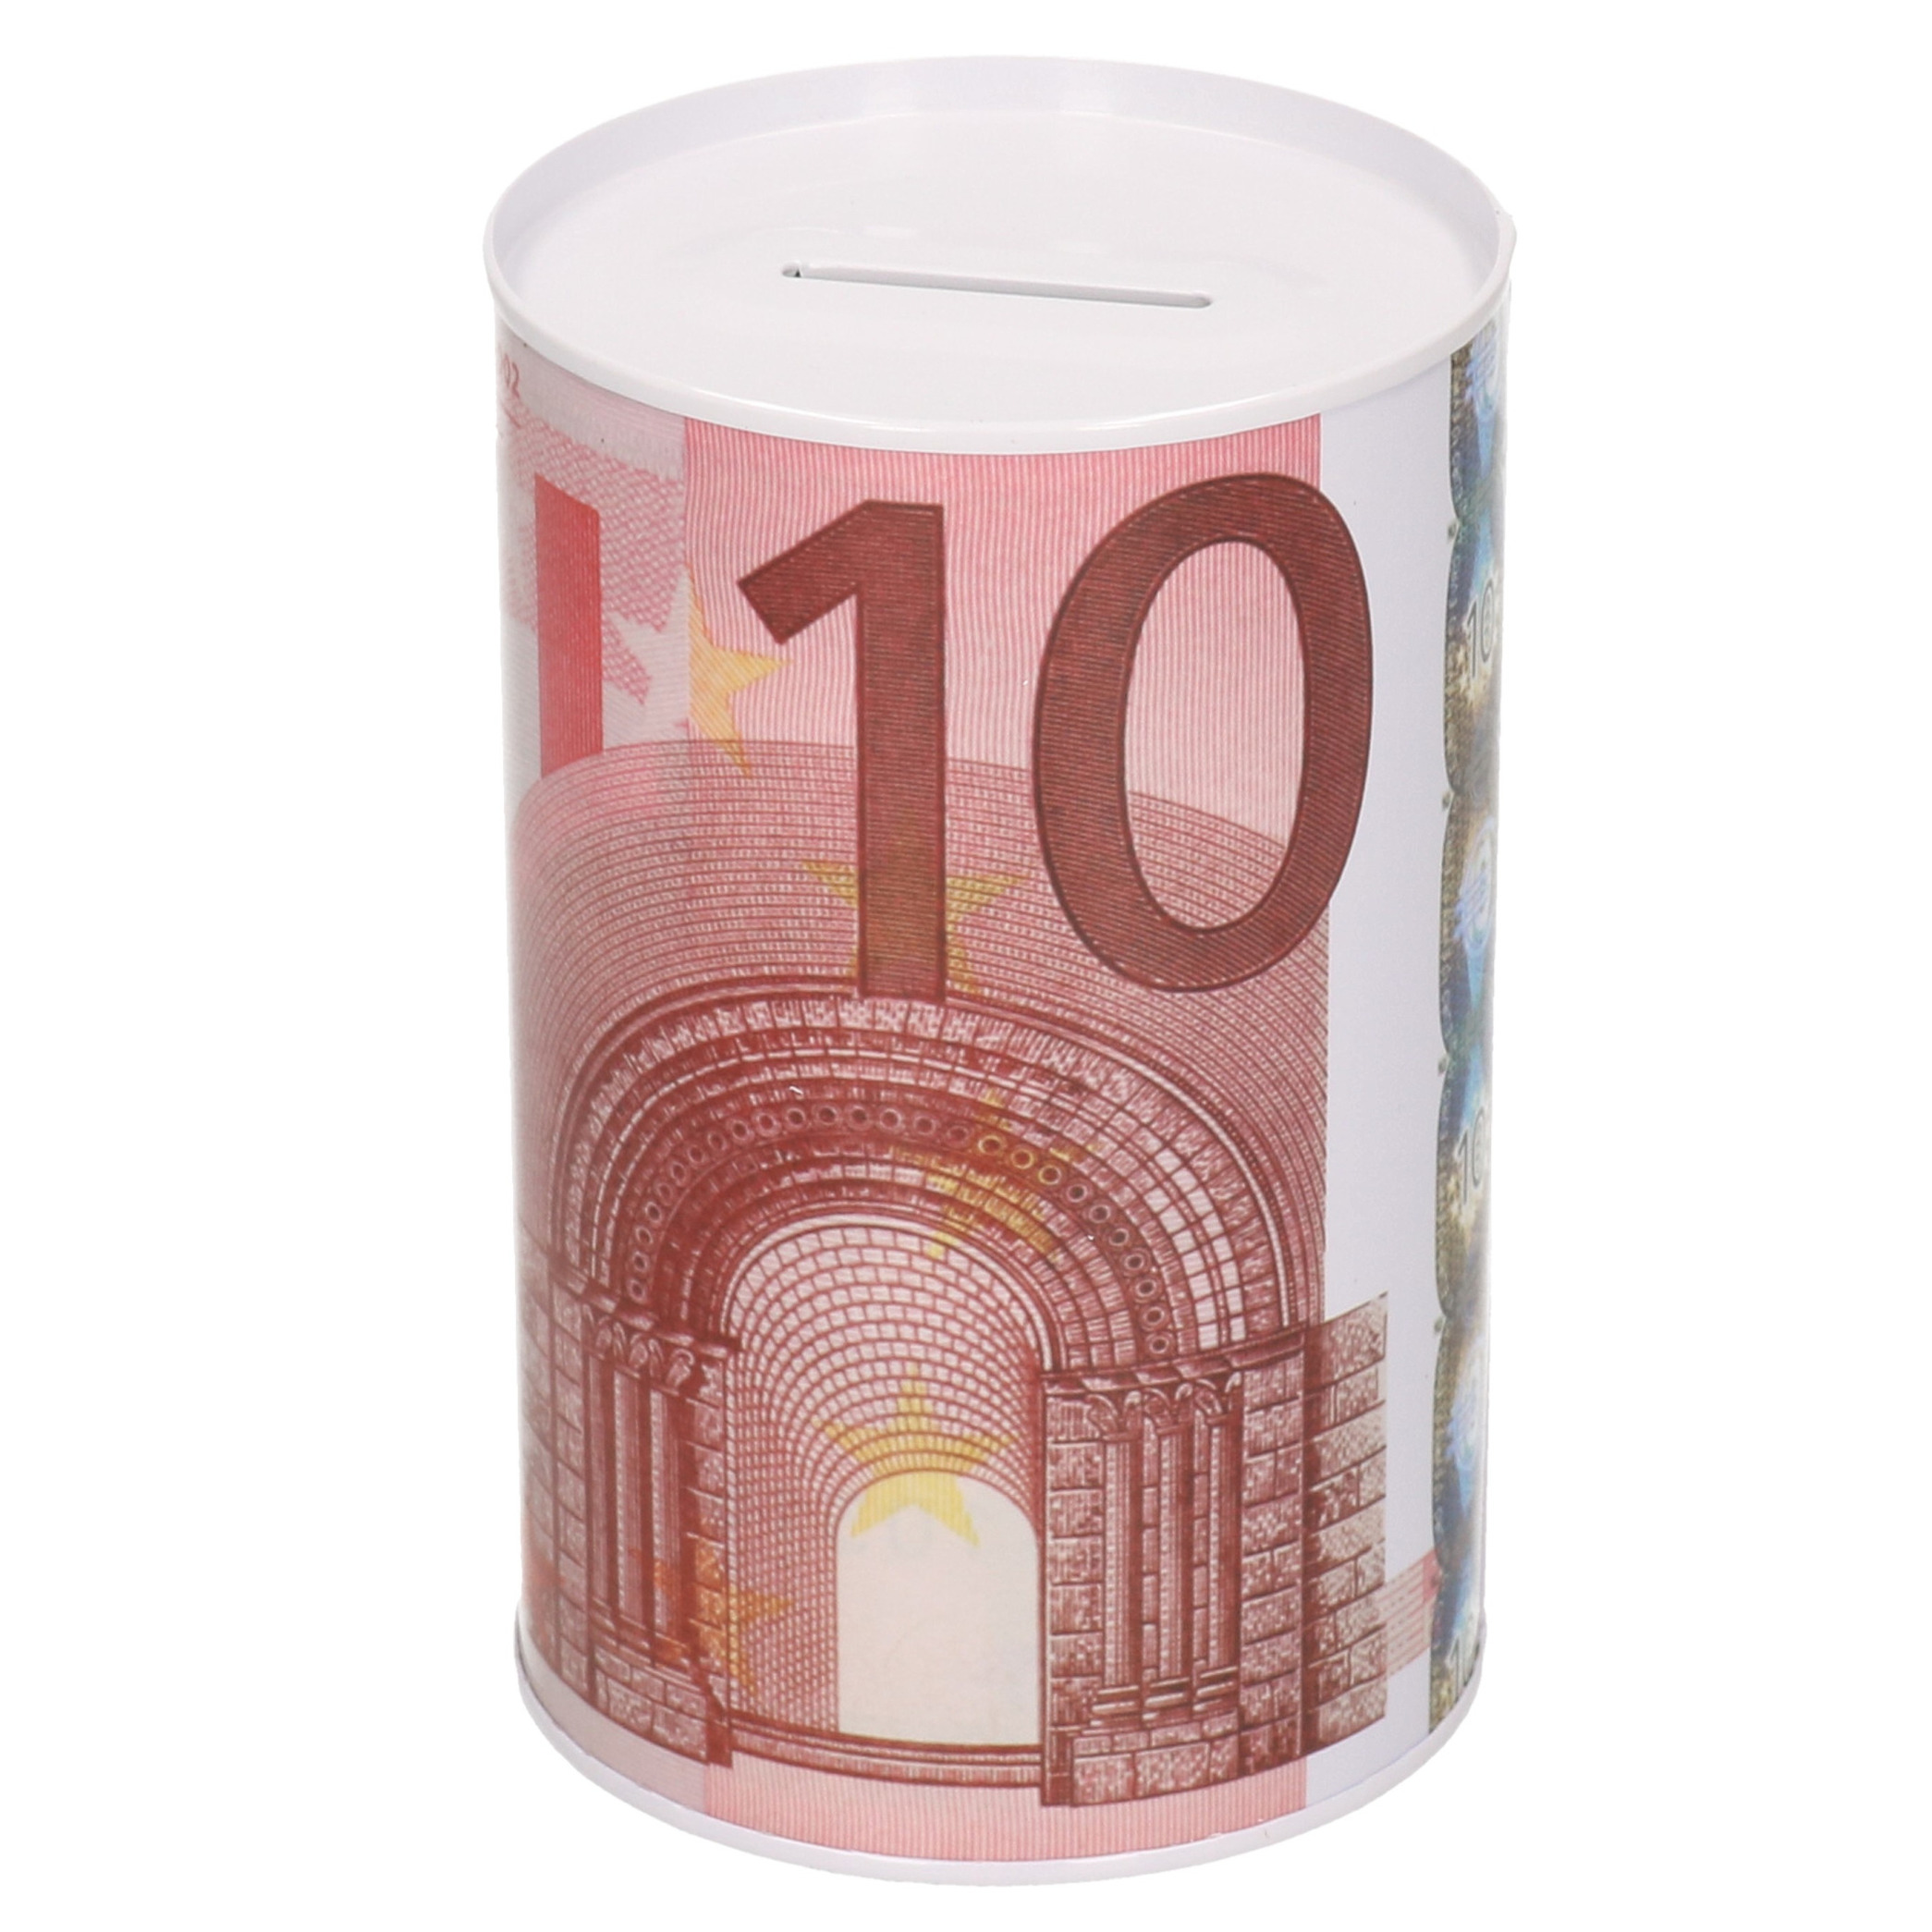 Spaarpot 10 euro biljet 8 x 15 cm - Blikken/metalen spaarpotten met euro biljetten - Roze